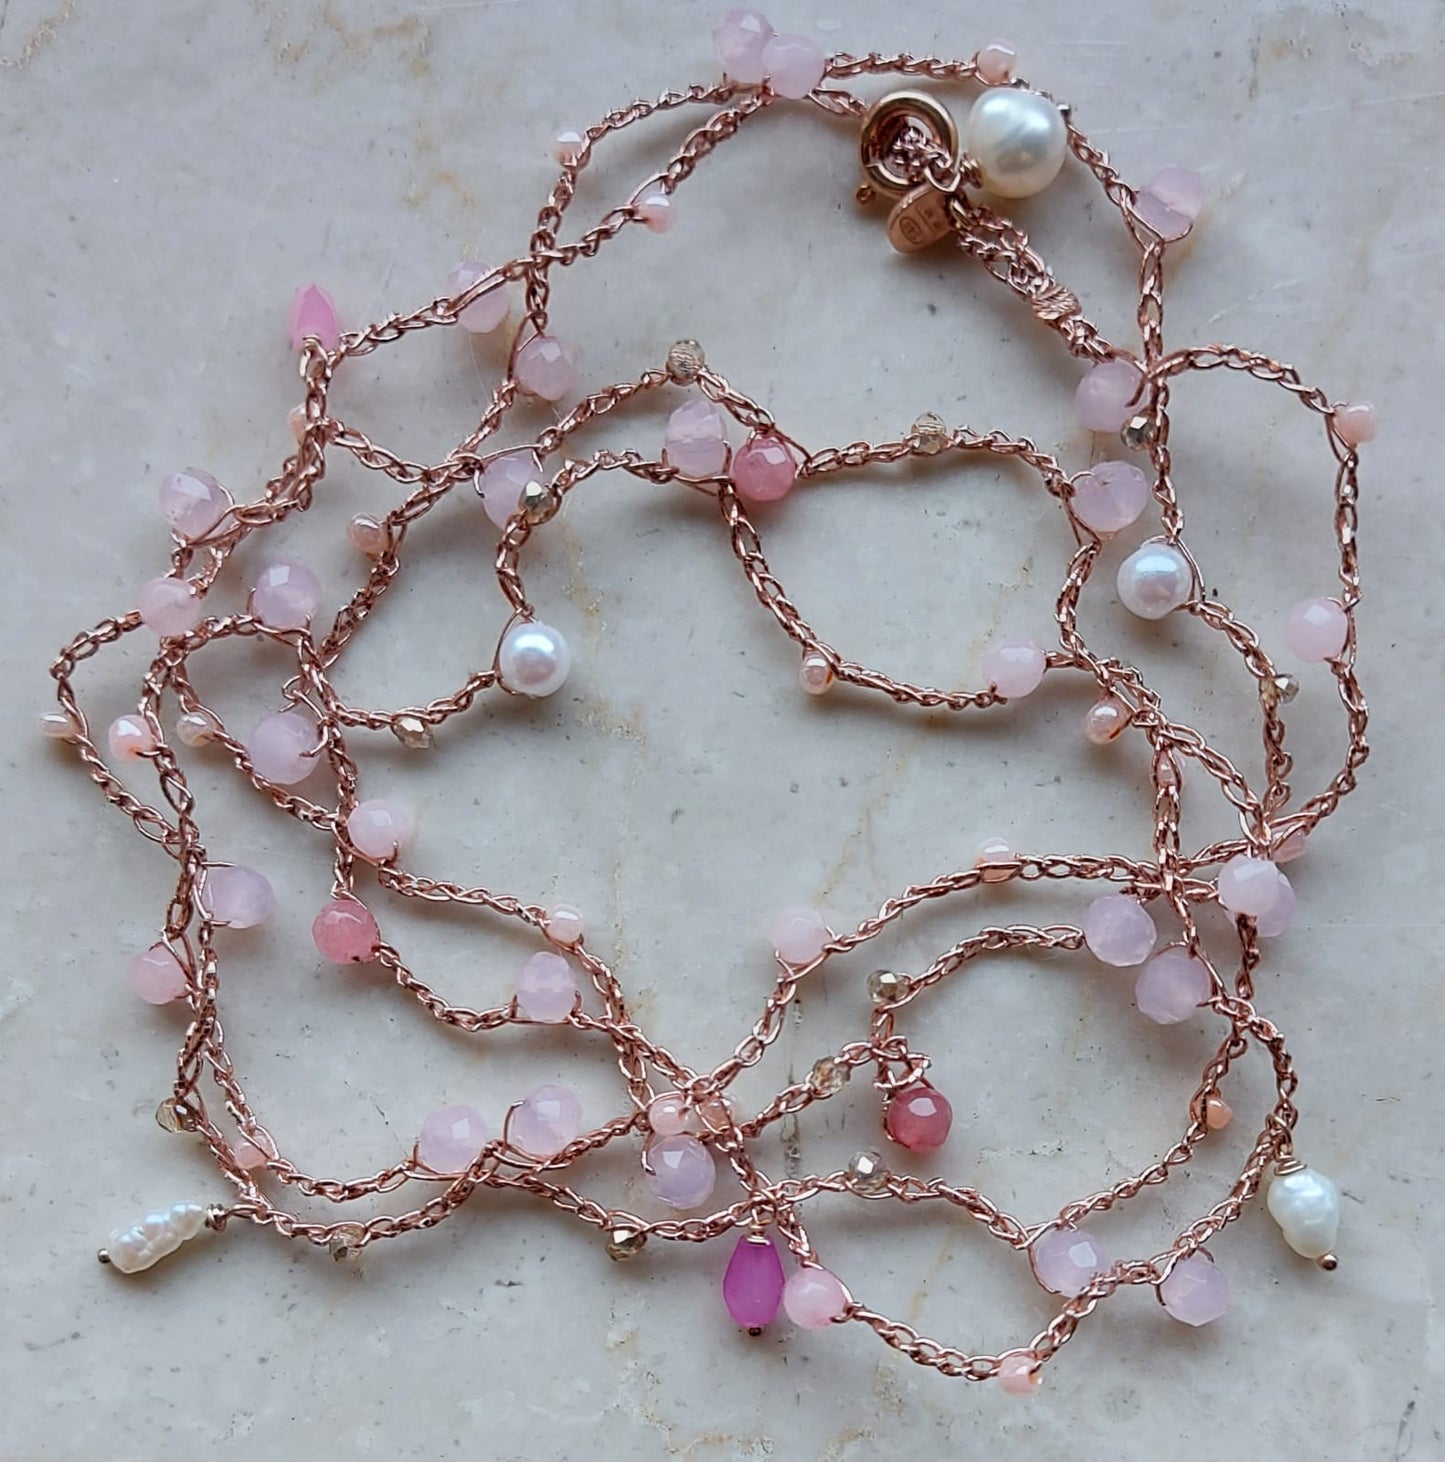 Cavigliera o bracciale o collana macramè con cristalli rosa,fucsia e perle